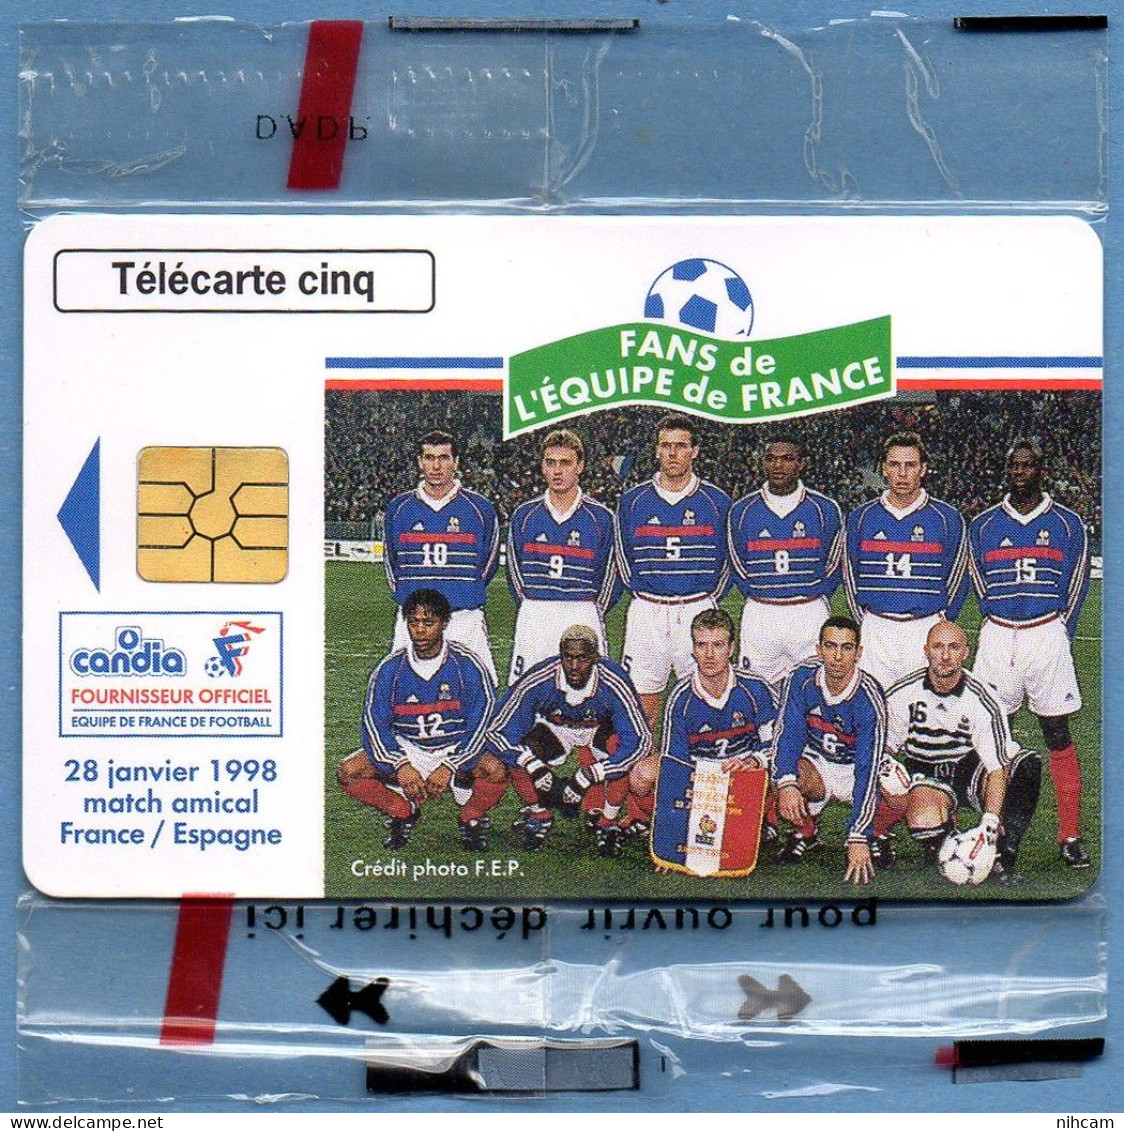 Télécarte France 5 U NSB Candia Equipe De France Football T2G 03/98 6500 Ex. Zidane Deschamps Bartez Thuram.... - 5 Einheiten